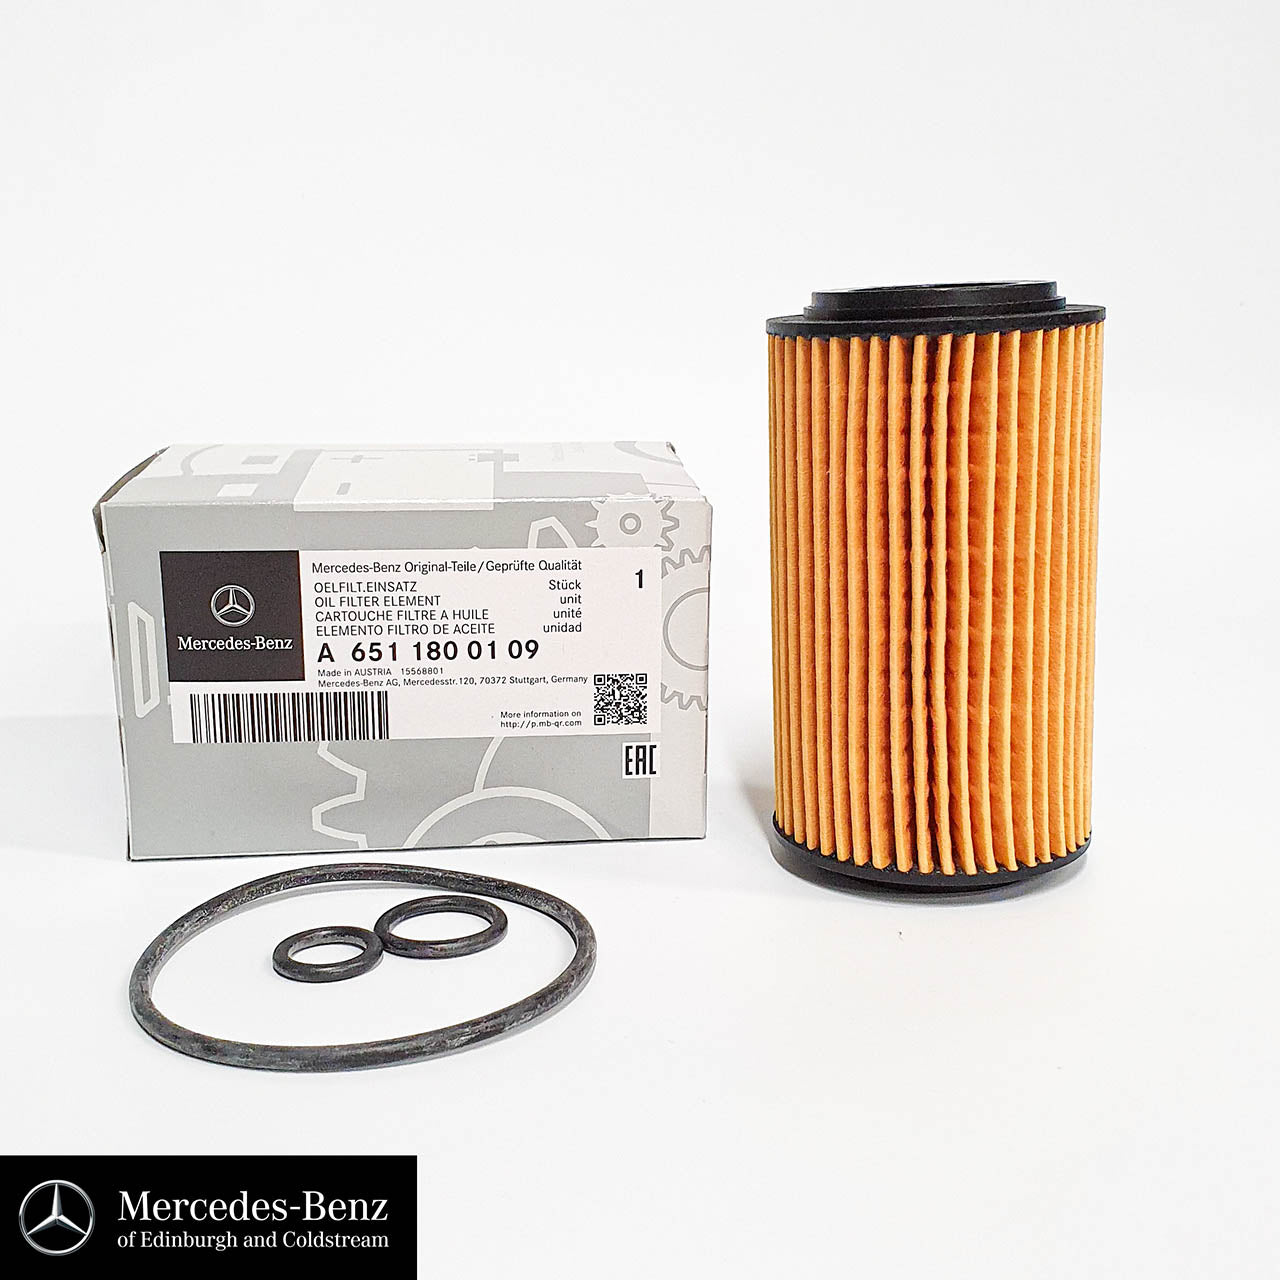 Genuine Mercedes-Benz Oil Filter for OM651 diesel engine